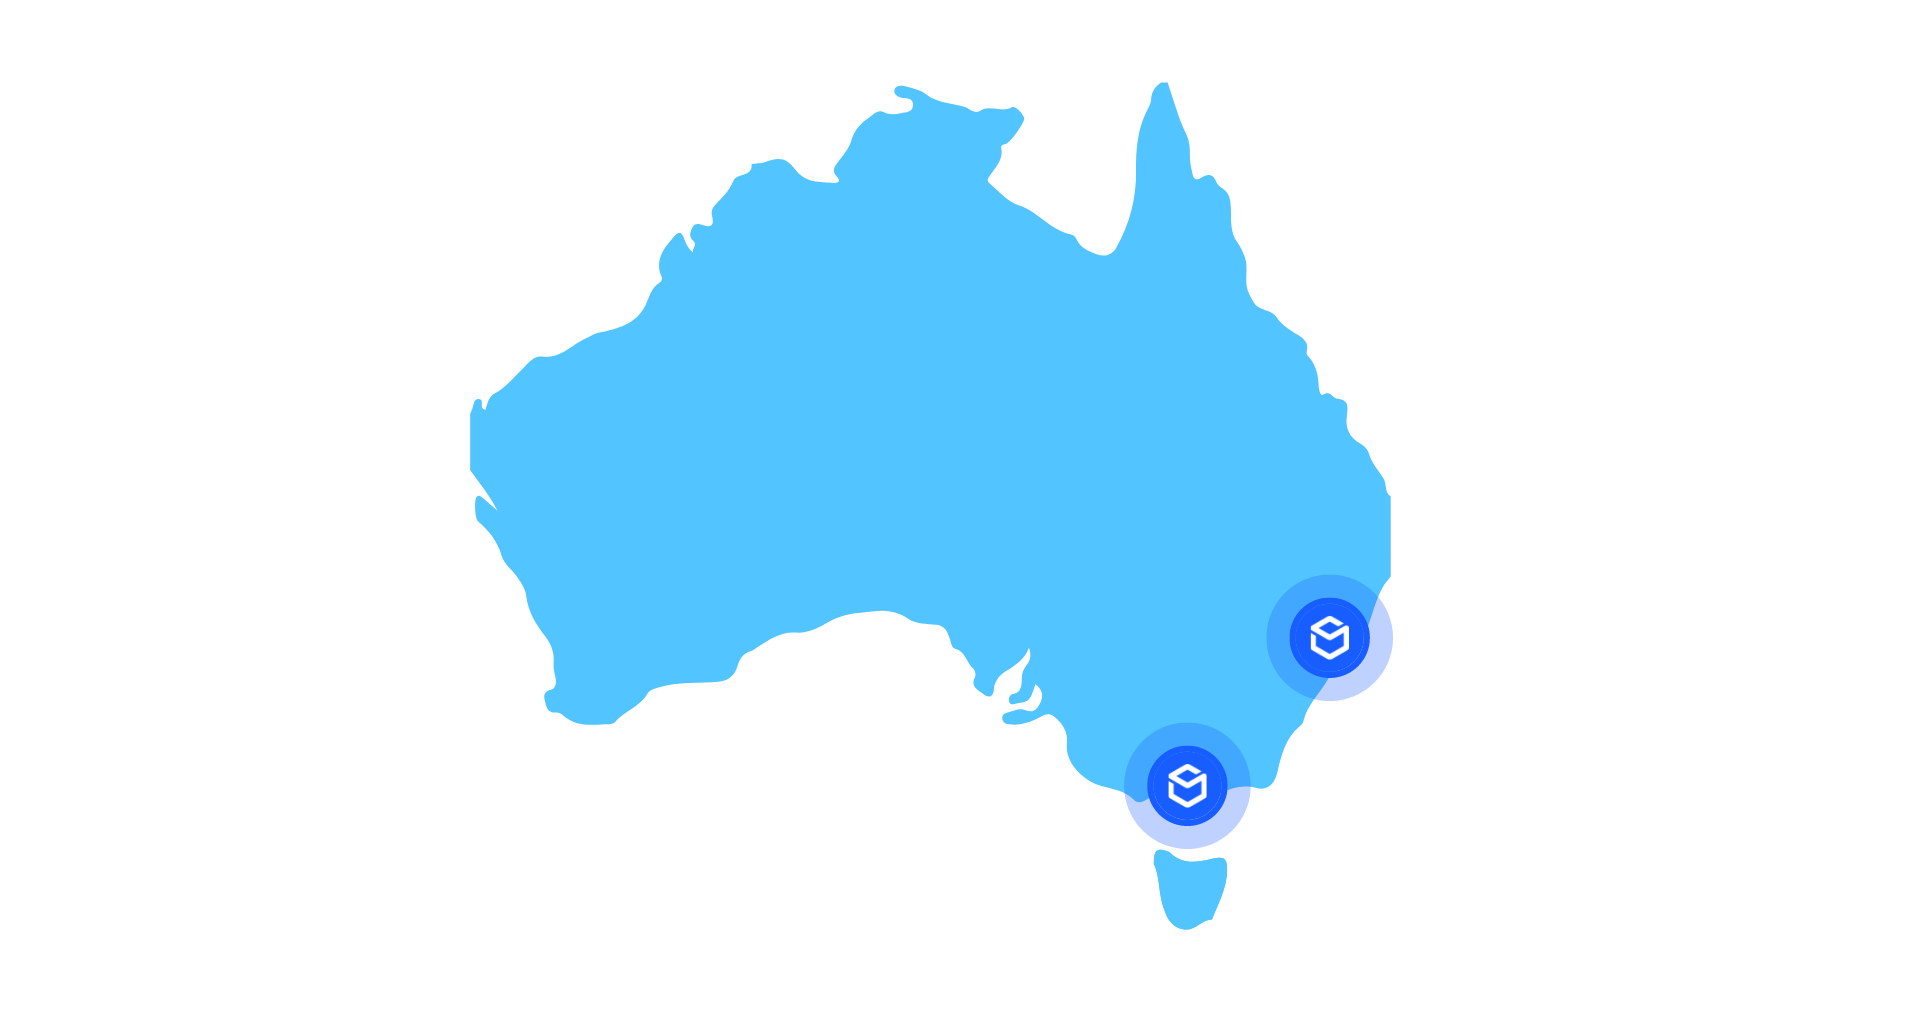 Australia-1